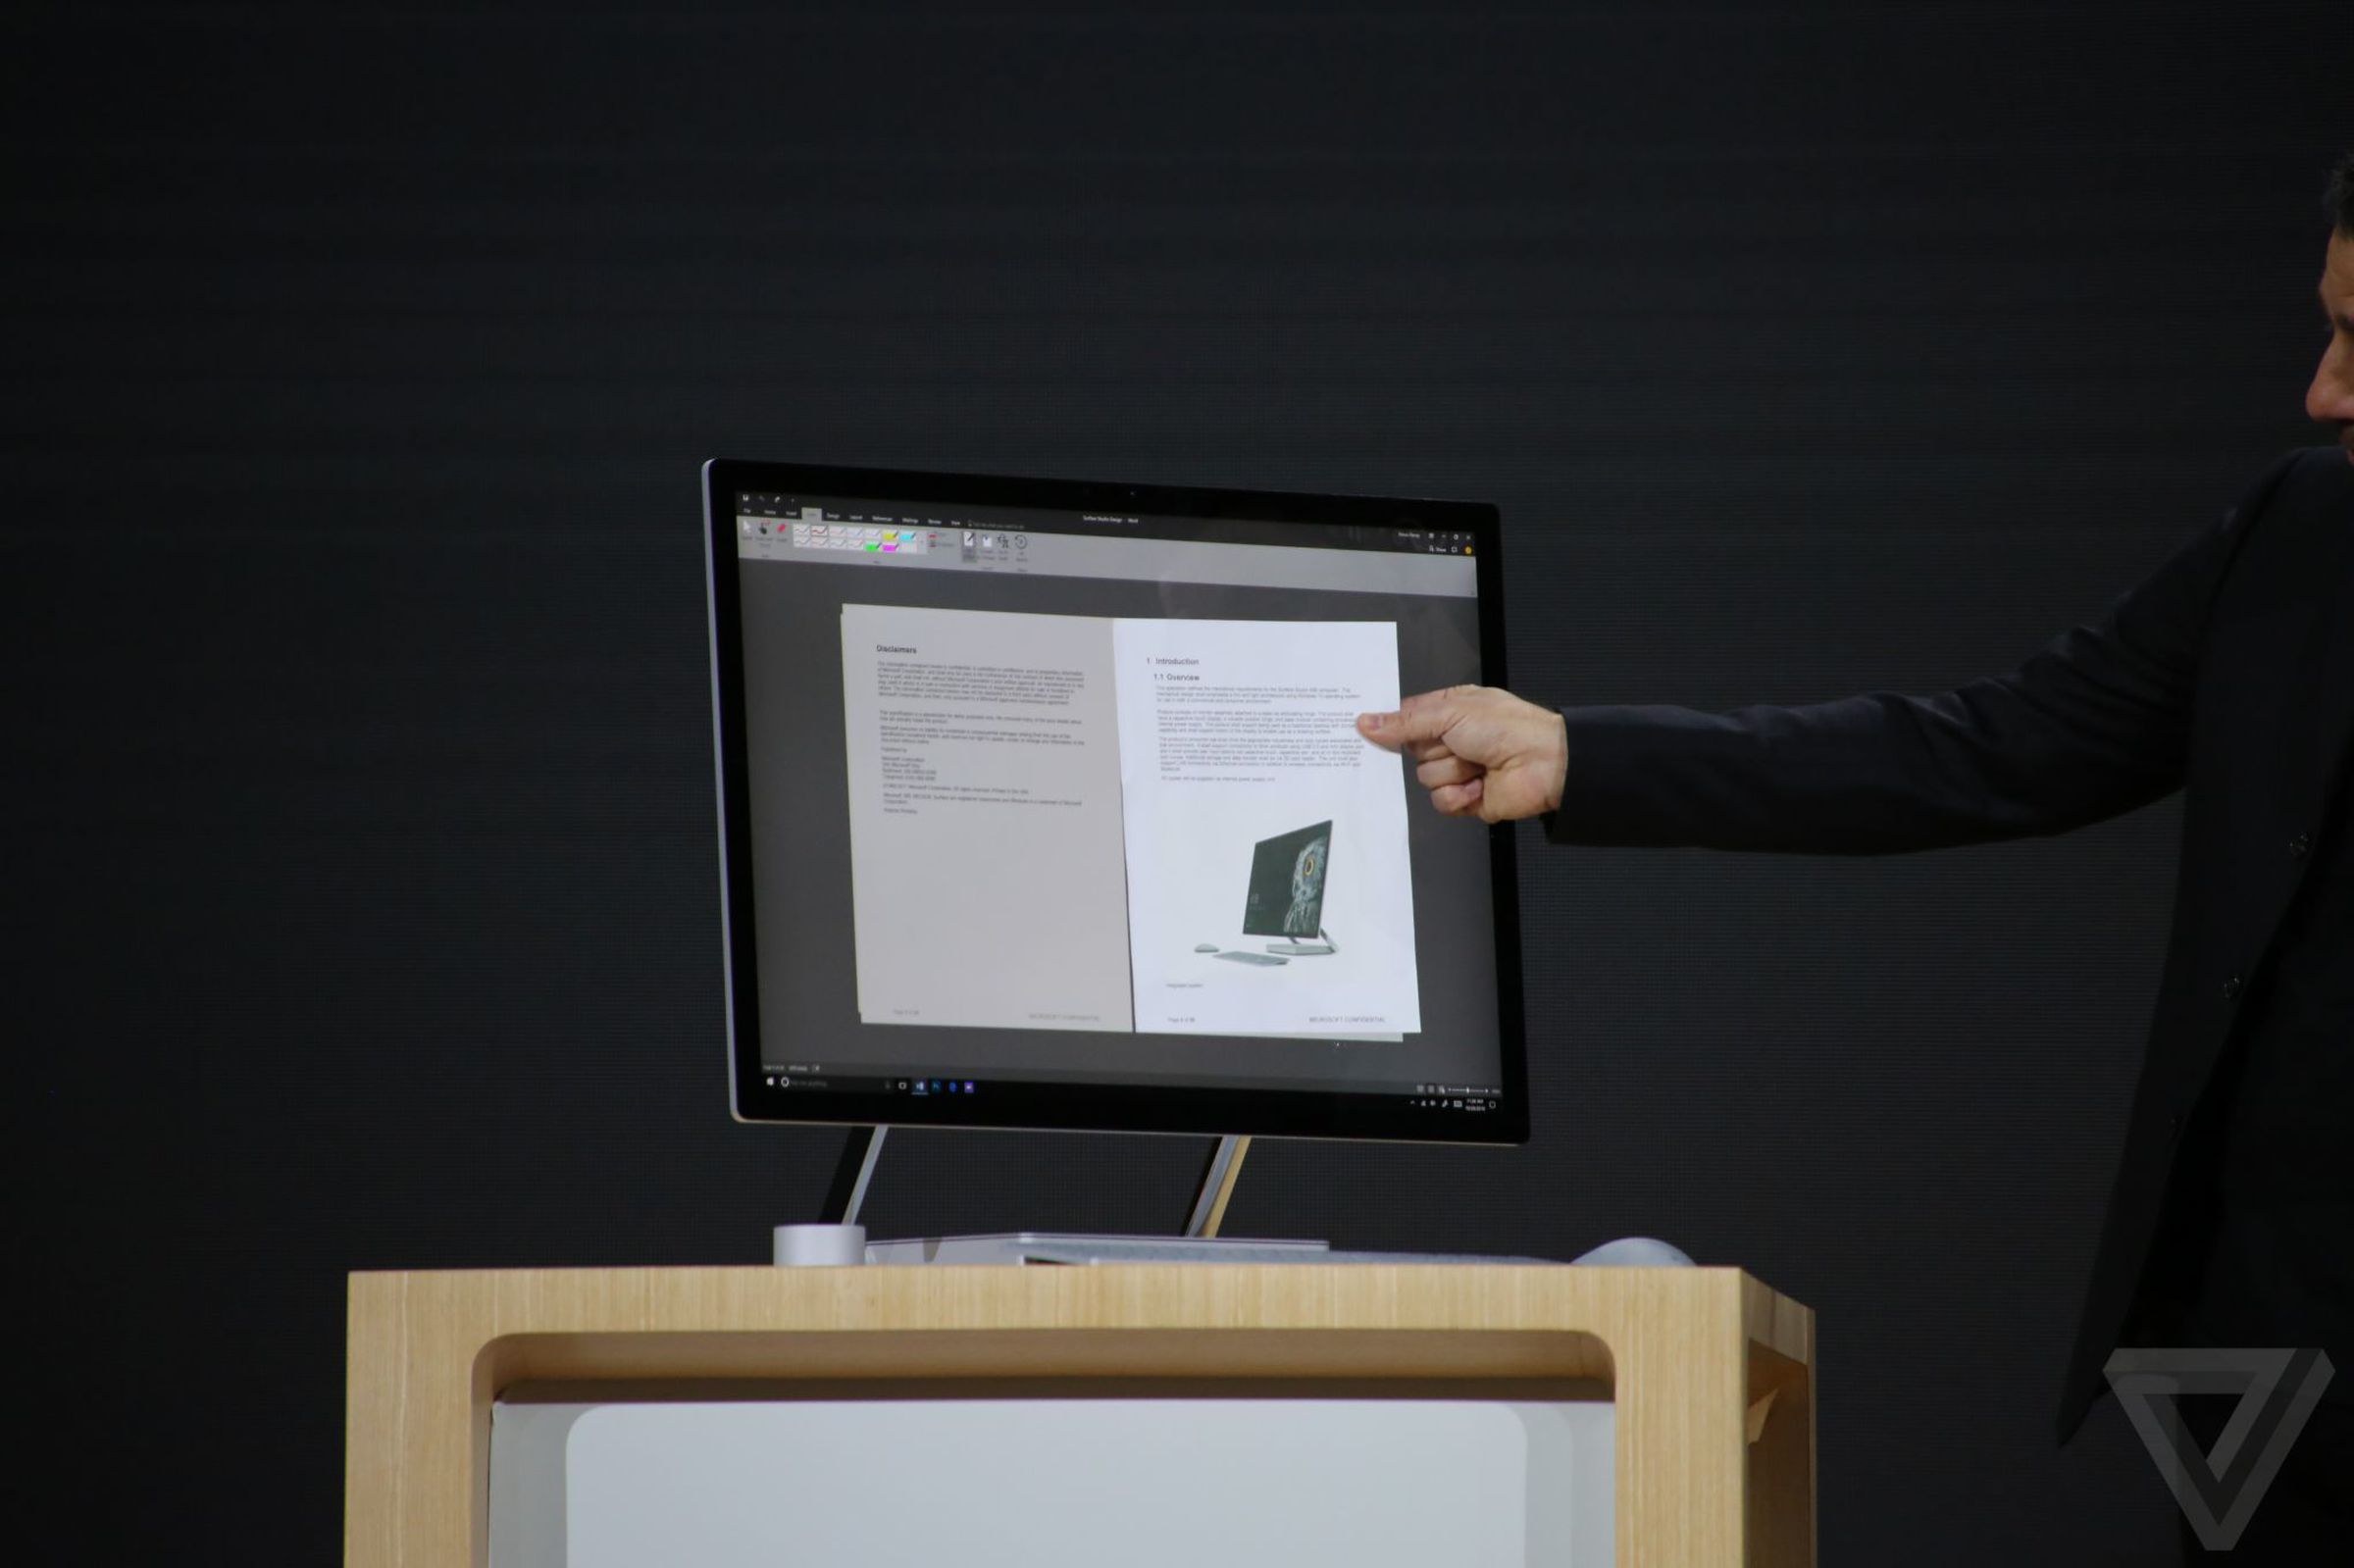 Surface Studio announcement photos